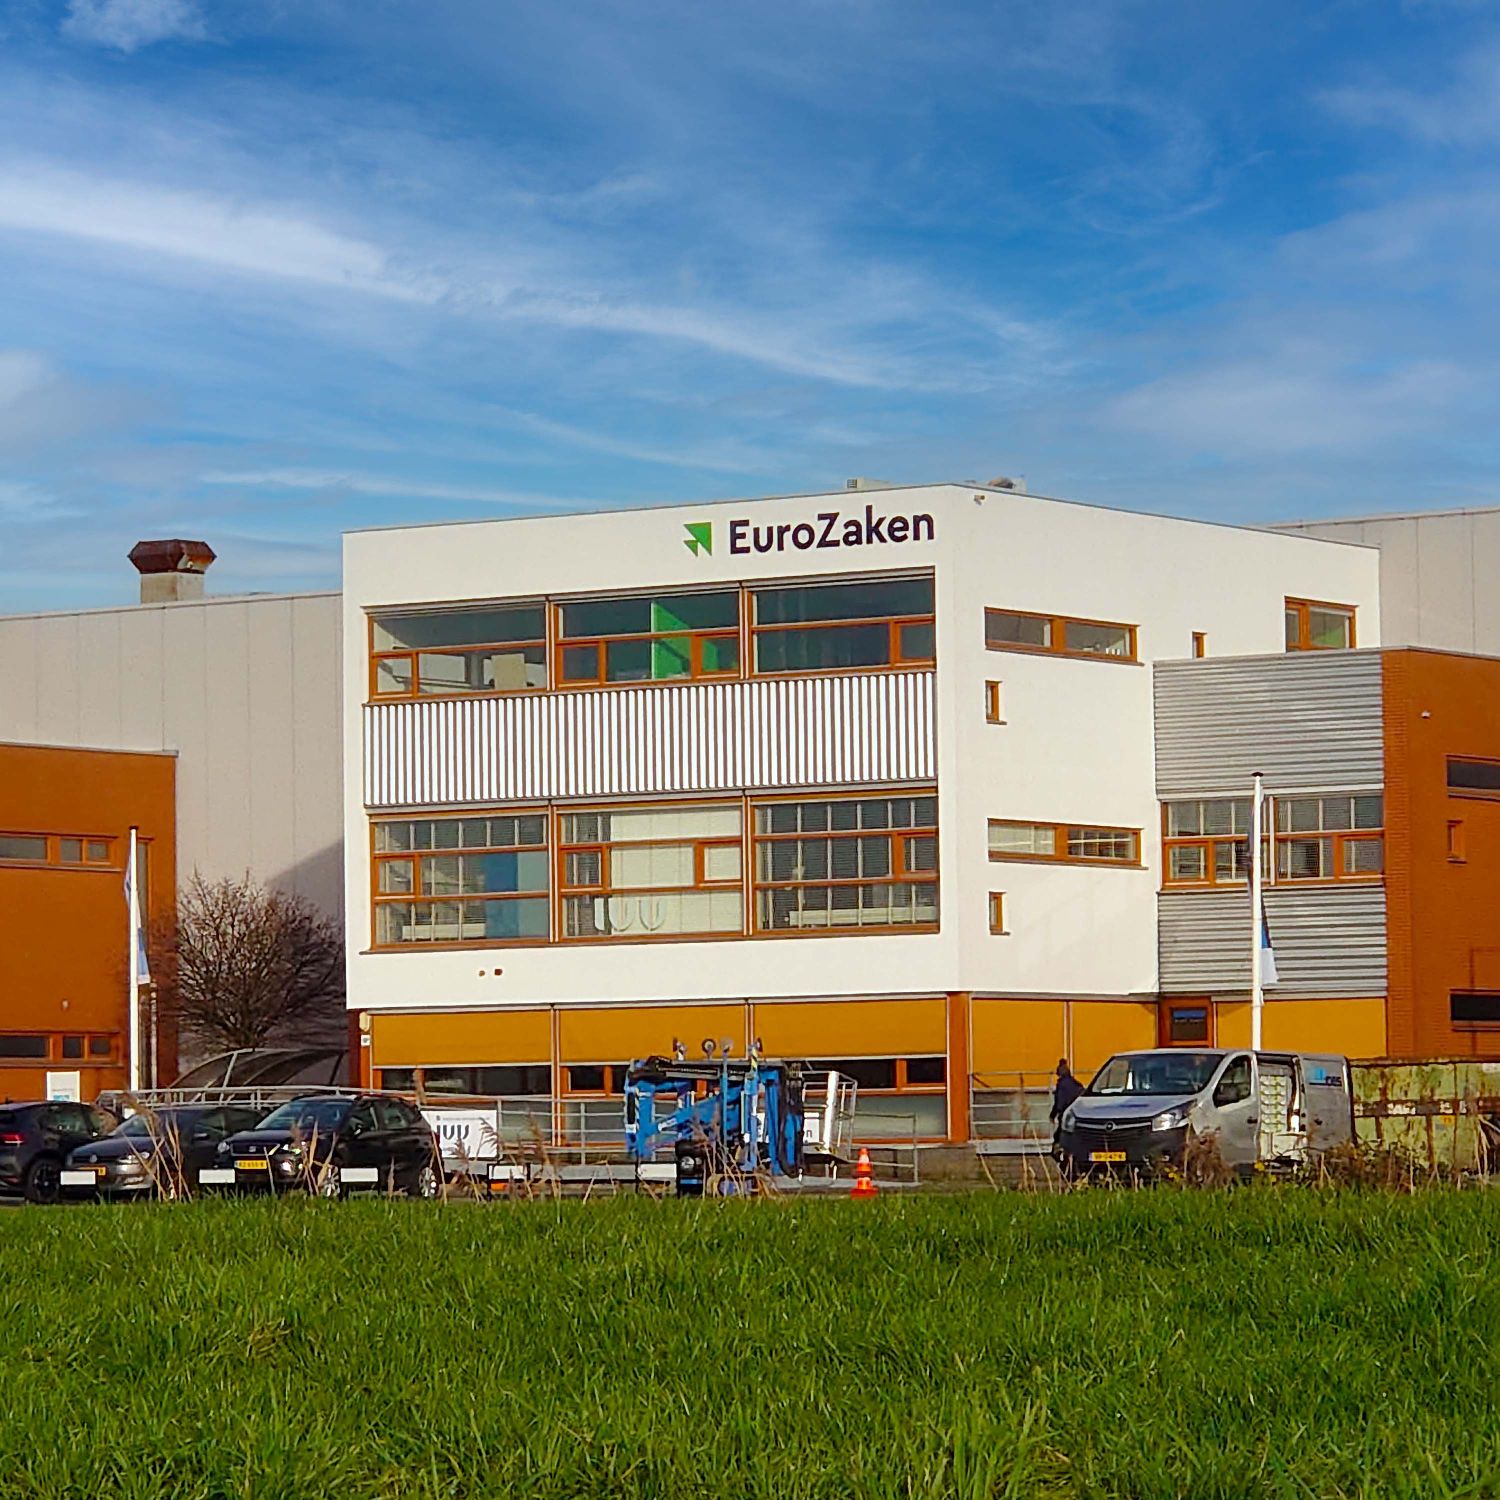 Bedrijfspand Eurozaken  in Maassluis voorzien van gevelsigning met Acrylaat freesletters van het bedrijfslogo.